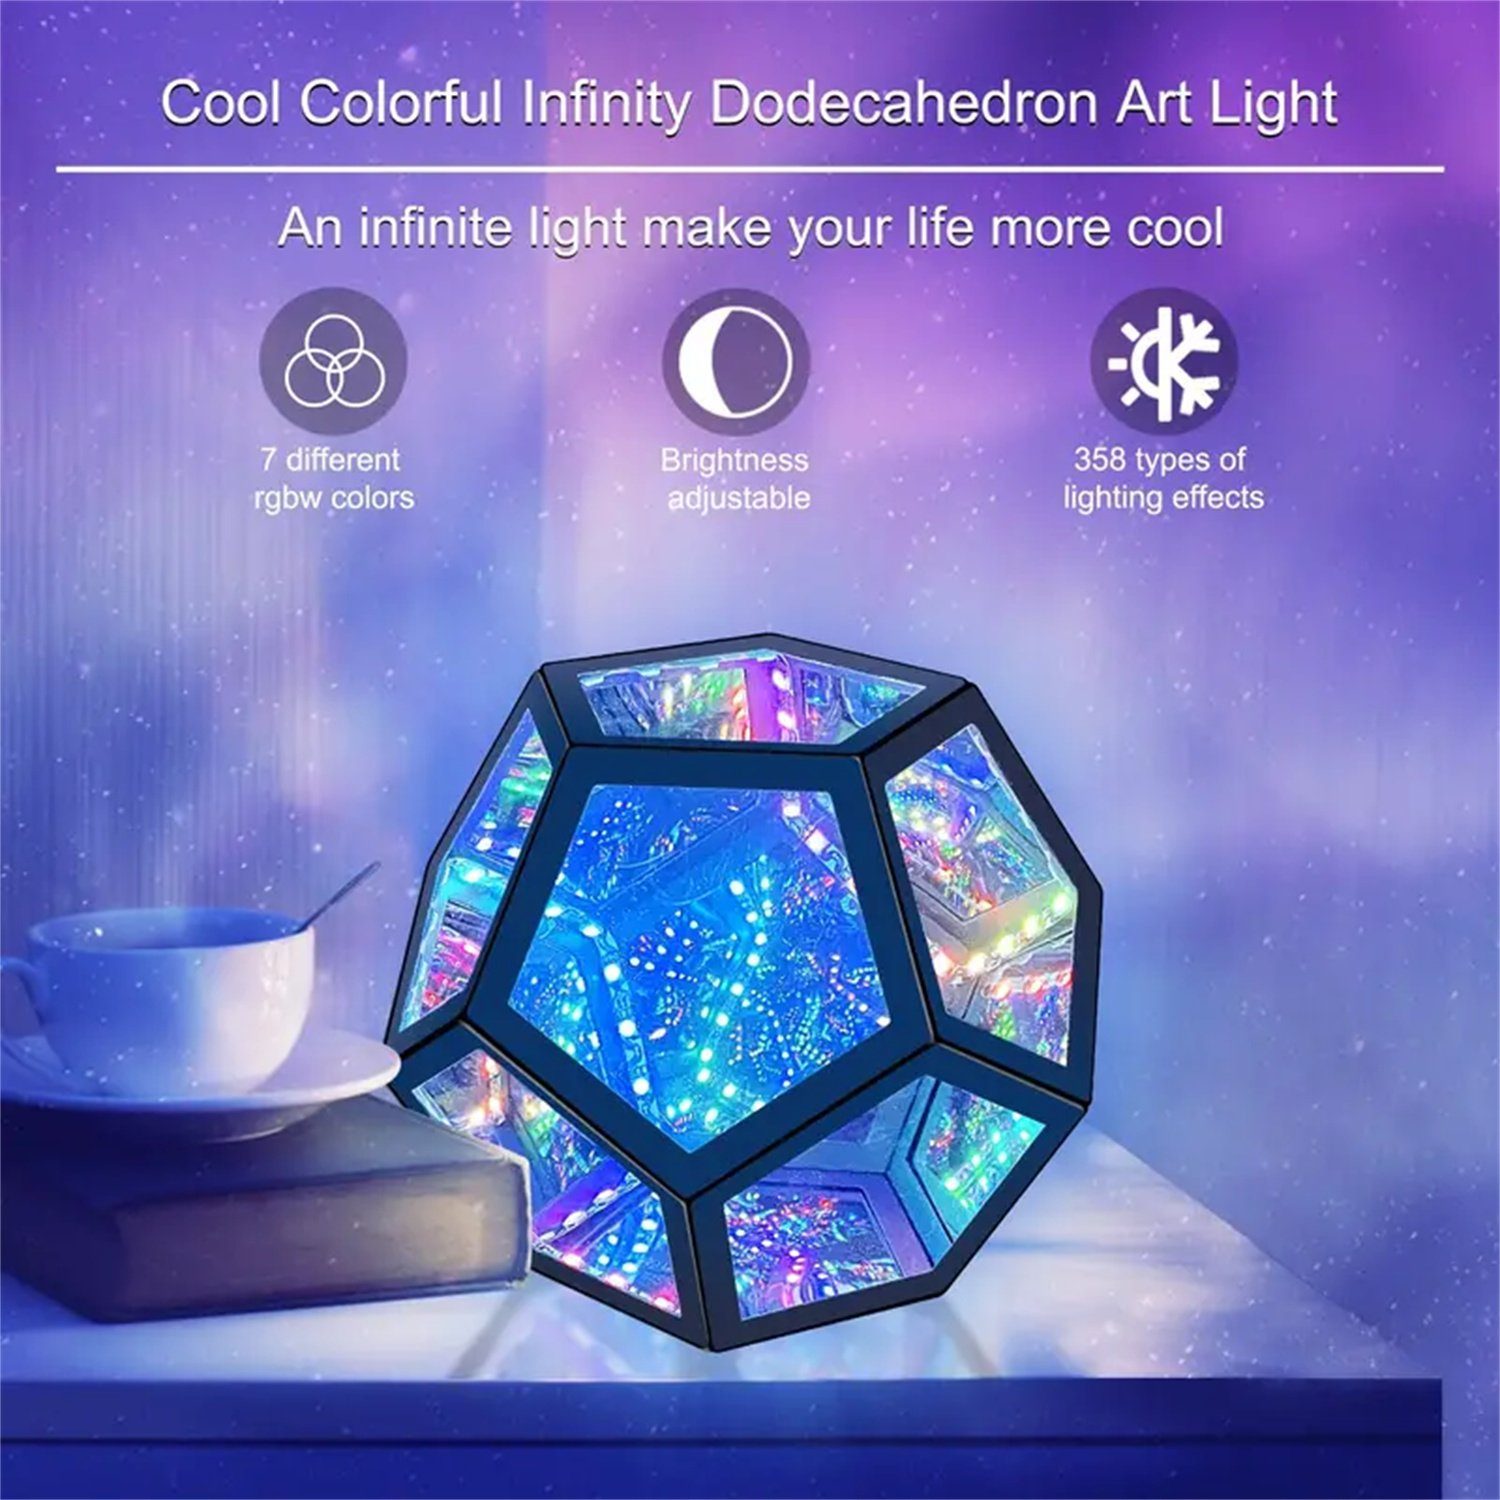 Farbwechselnde autolock LED Dodekaeder-Tischlampe, Licht buntes Nachtlicht